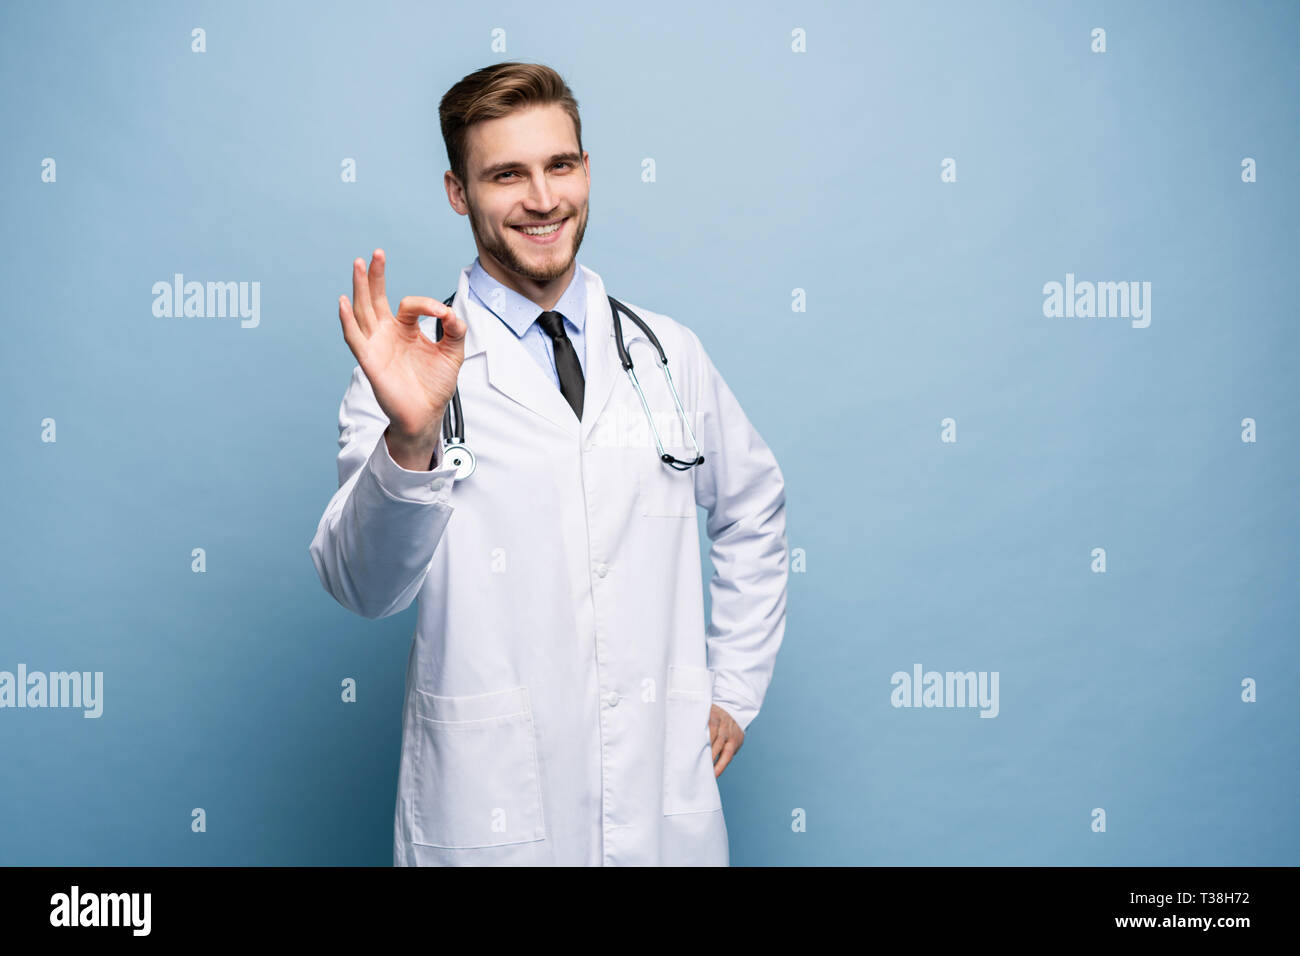 Gesundheitswesen, Beruf, Geste, Menschen und Medizin Konzept - Lächeln männlicher Arzt im weißen Kittel mit ok Handzeichen. Stockfoto